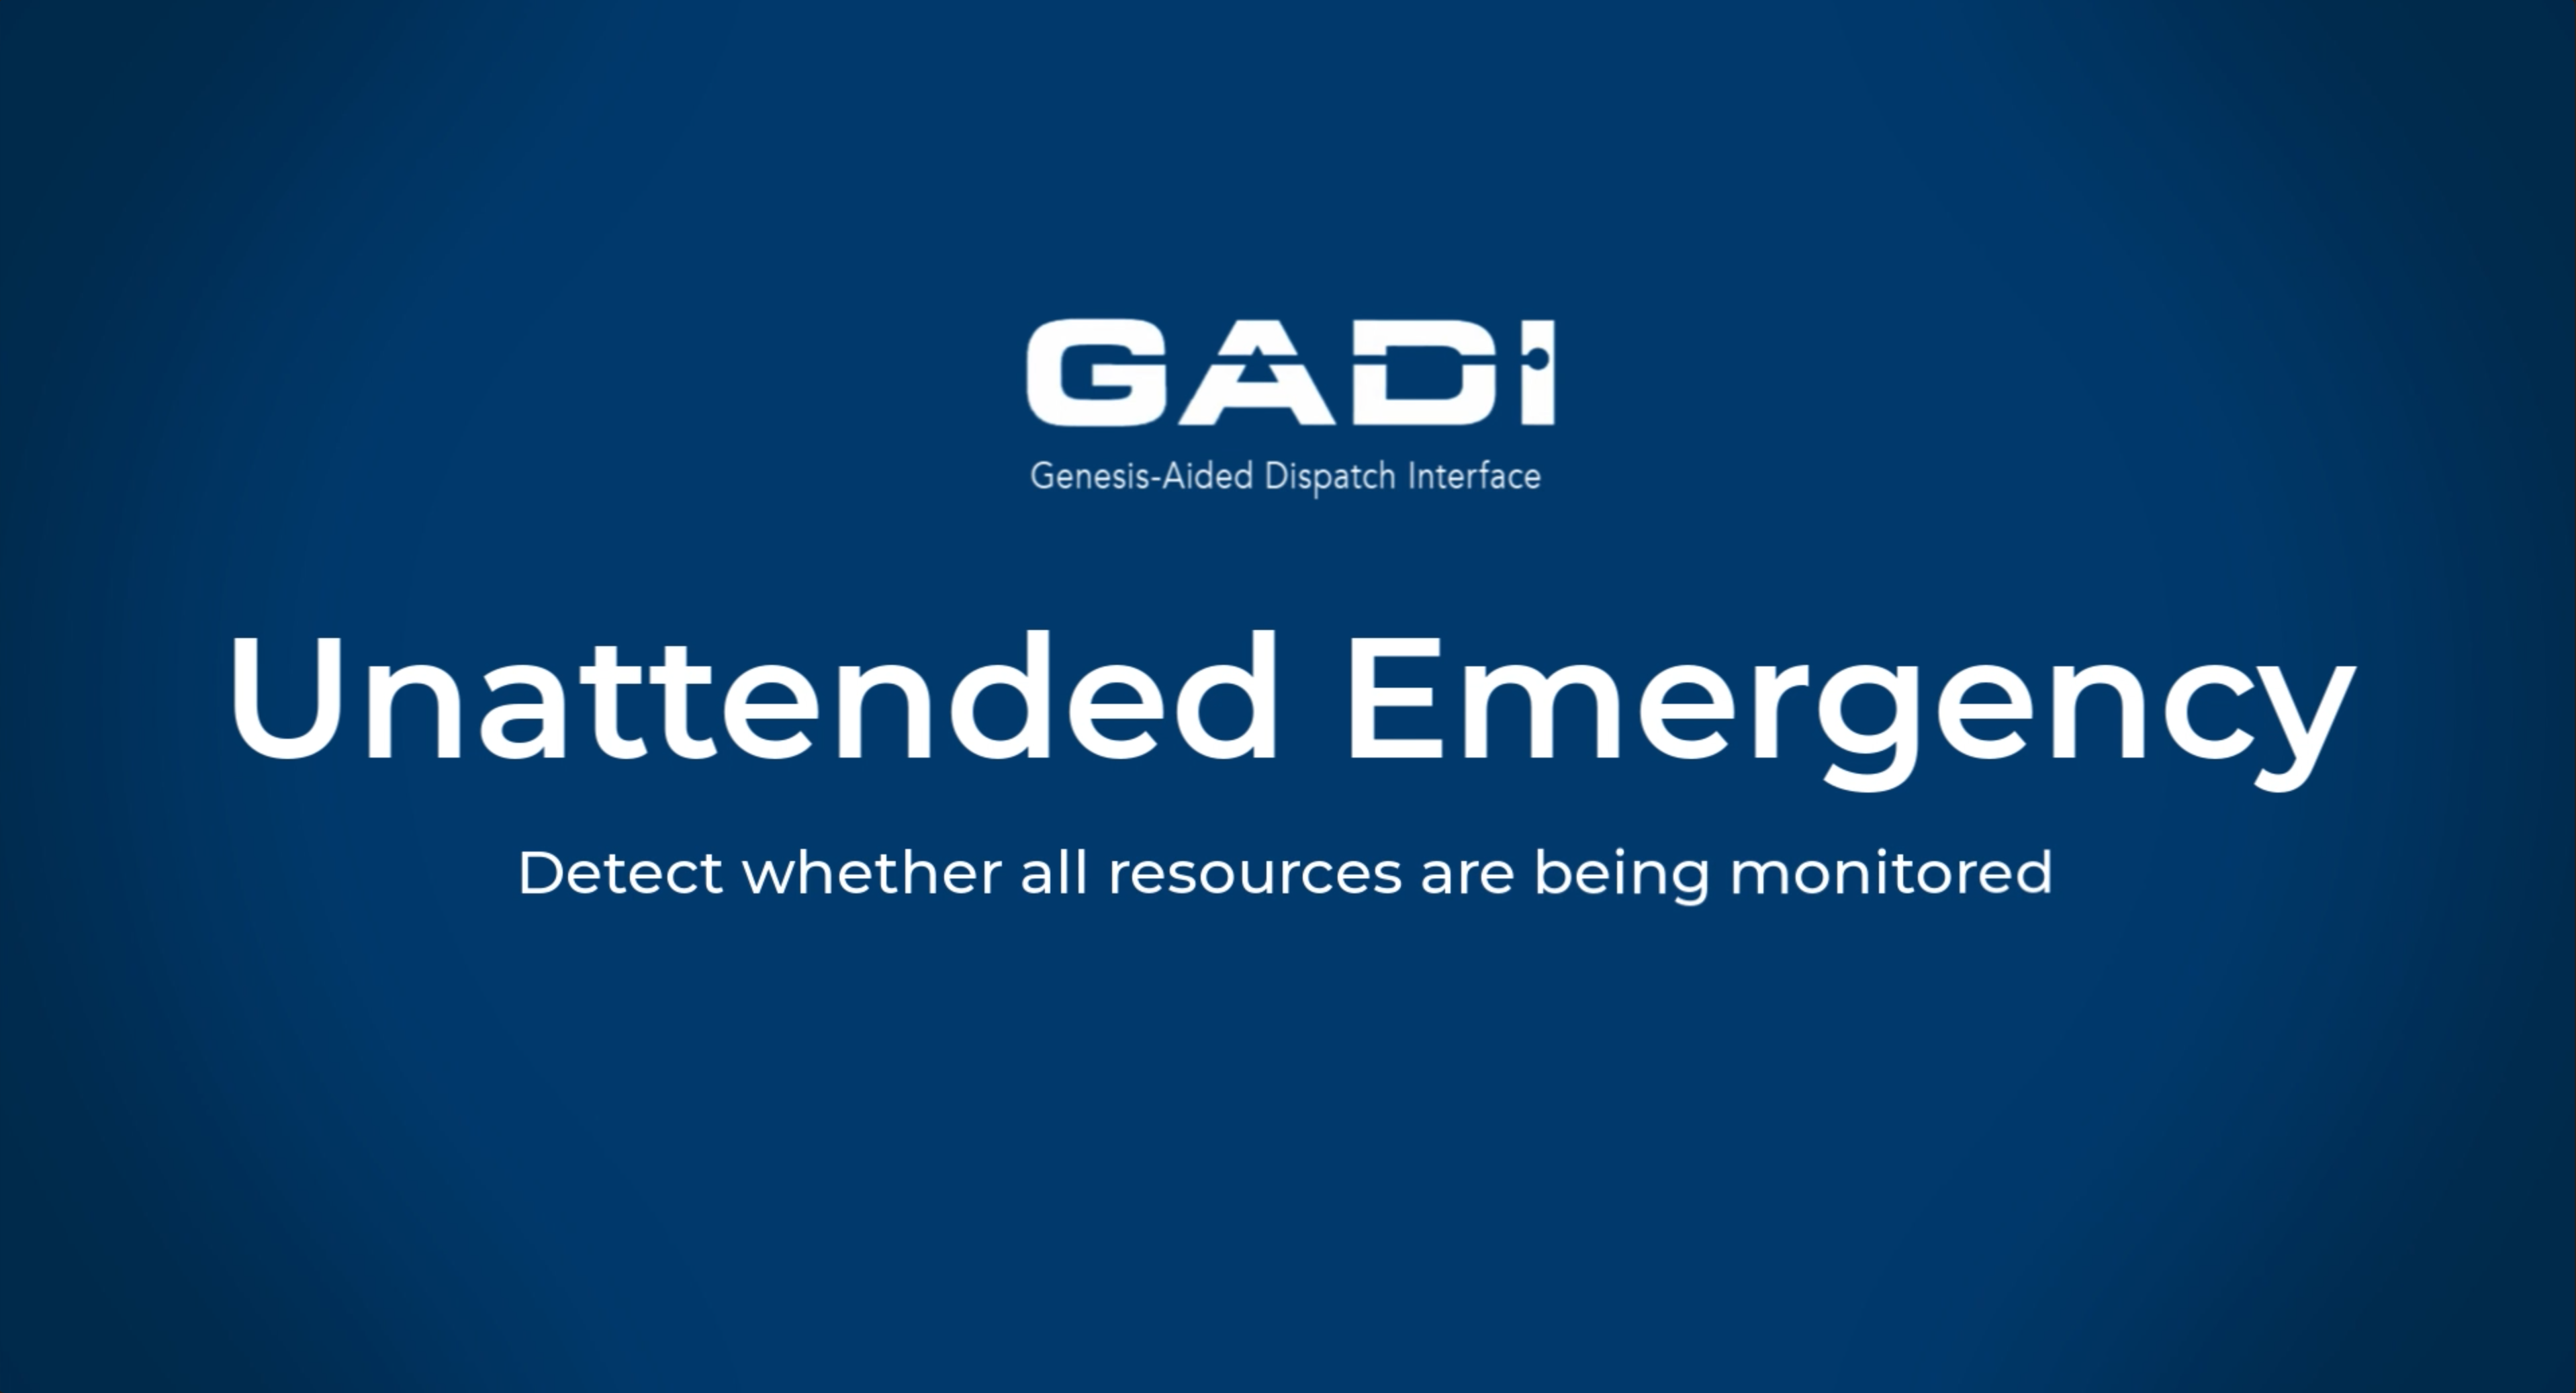 GADI_Unattended_Emergency